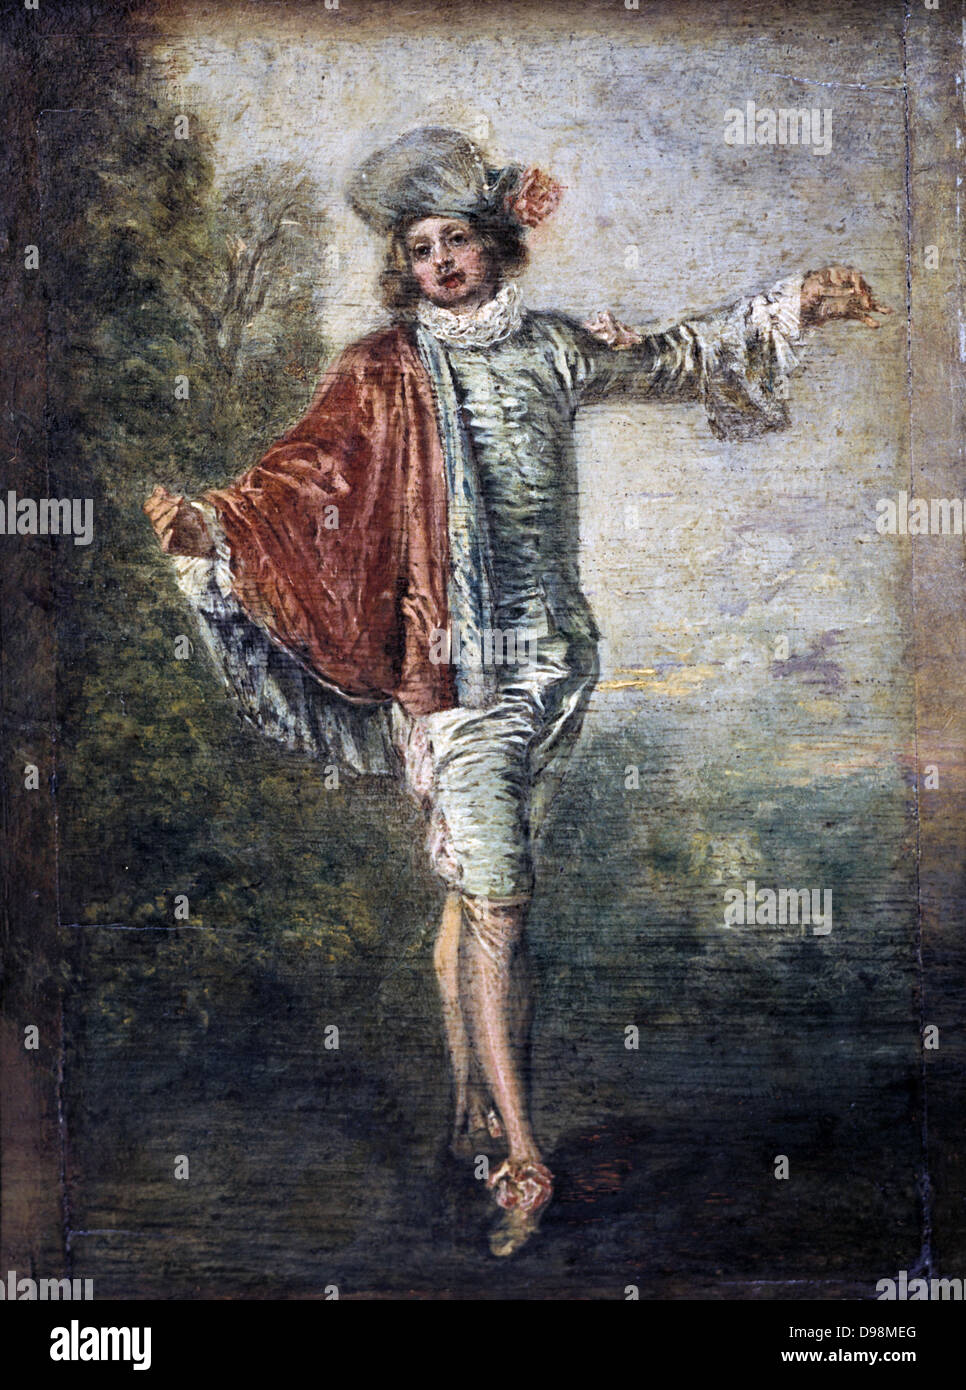 L'Gleichgültig" (Die Gallant: Die Flirt-) Öl auf Leinwand. Jean-Antoine Watteau (1684-1721), französischer Maler. Mode Männer Strumpf Hosen Schuh Mantel Ruff Stoff Satin Velvet Stockfoto